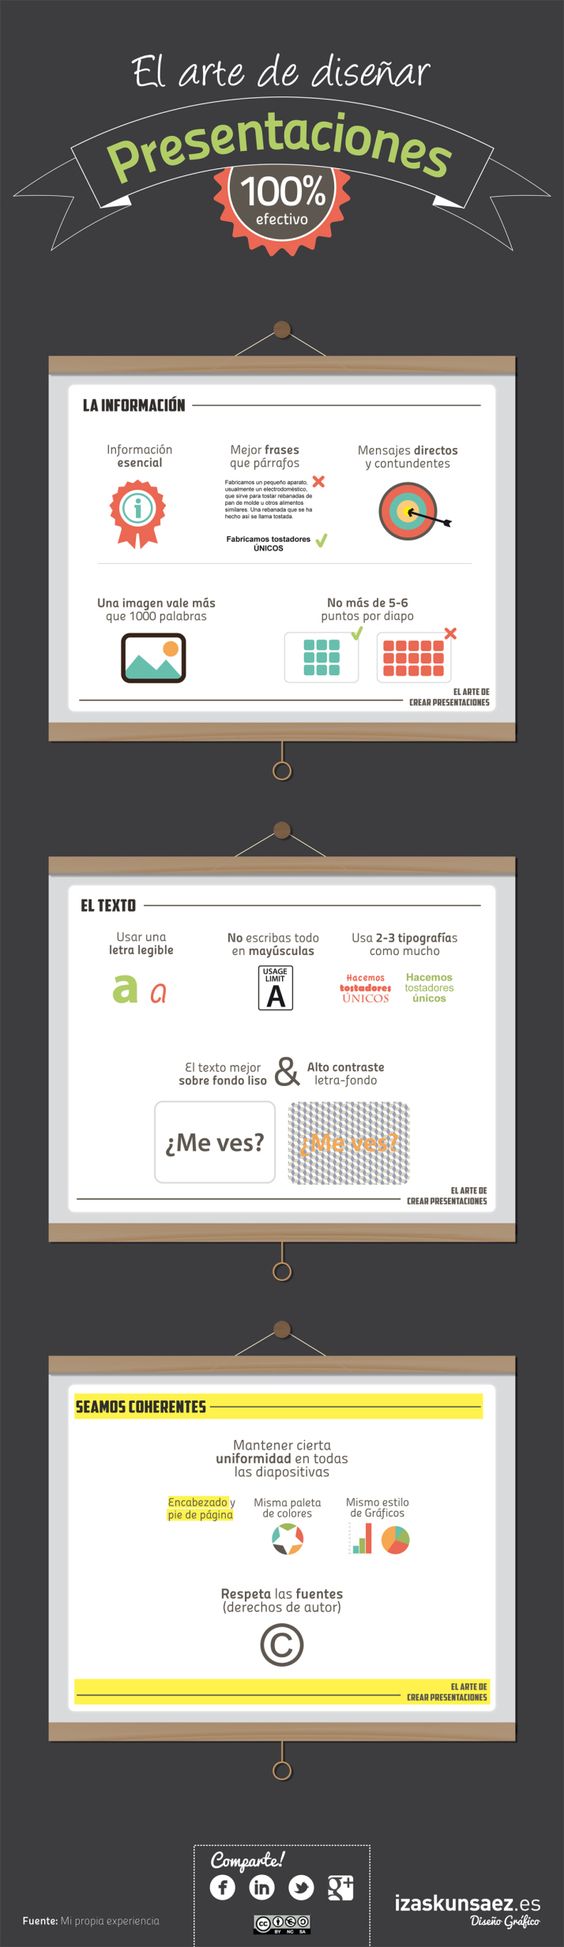 El arte de diseñar buenas presentaciones #infografia #infographic #marketing